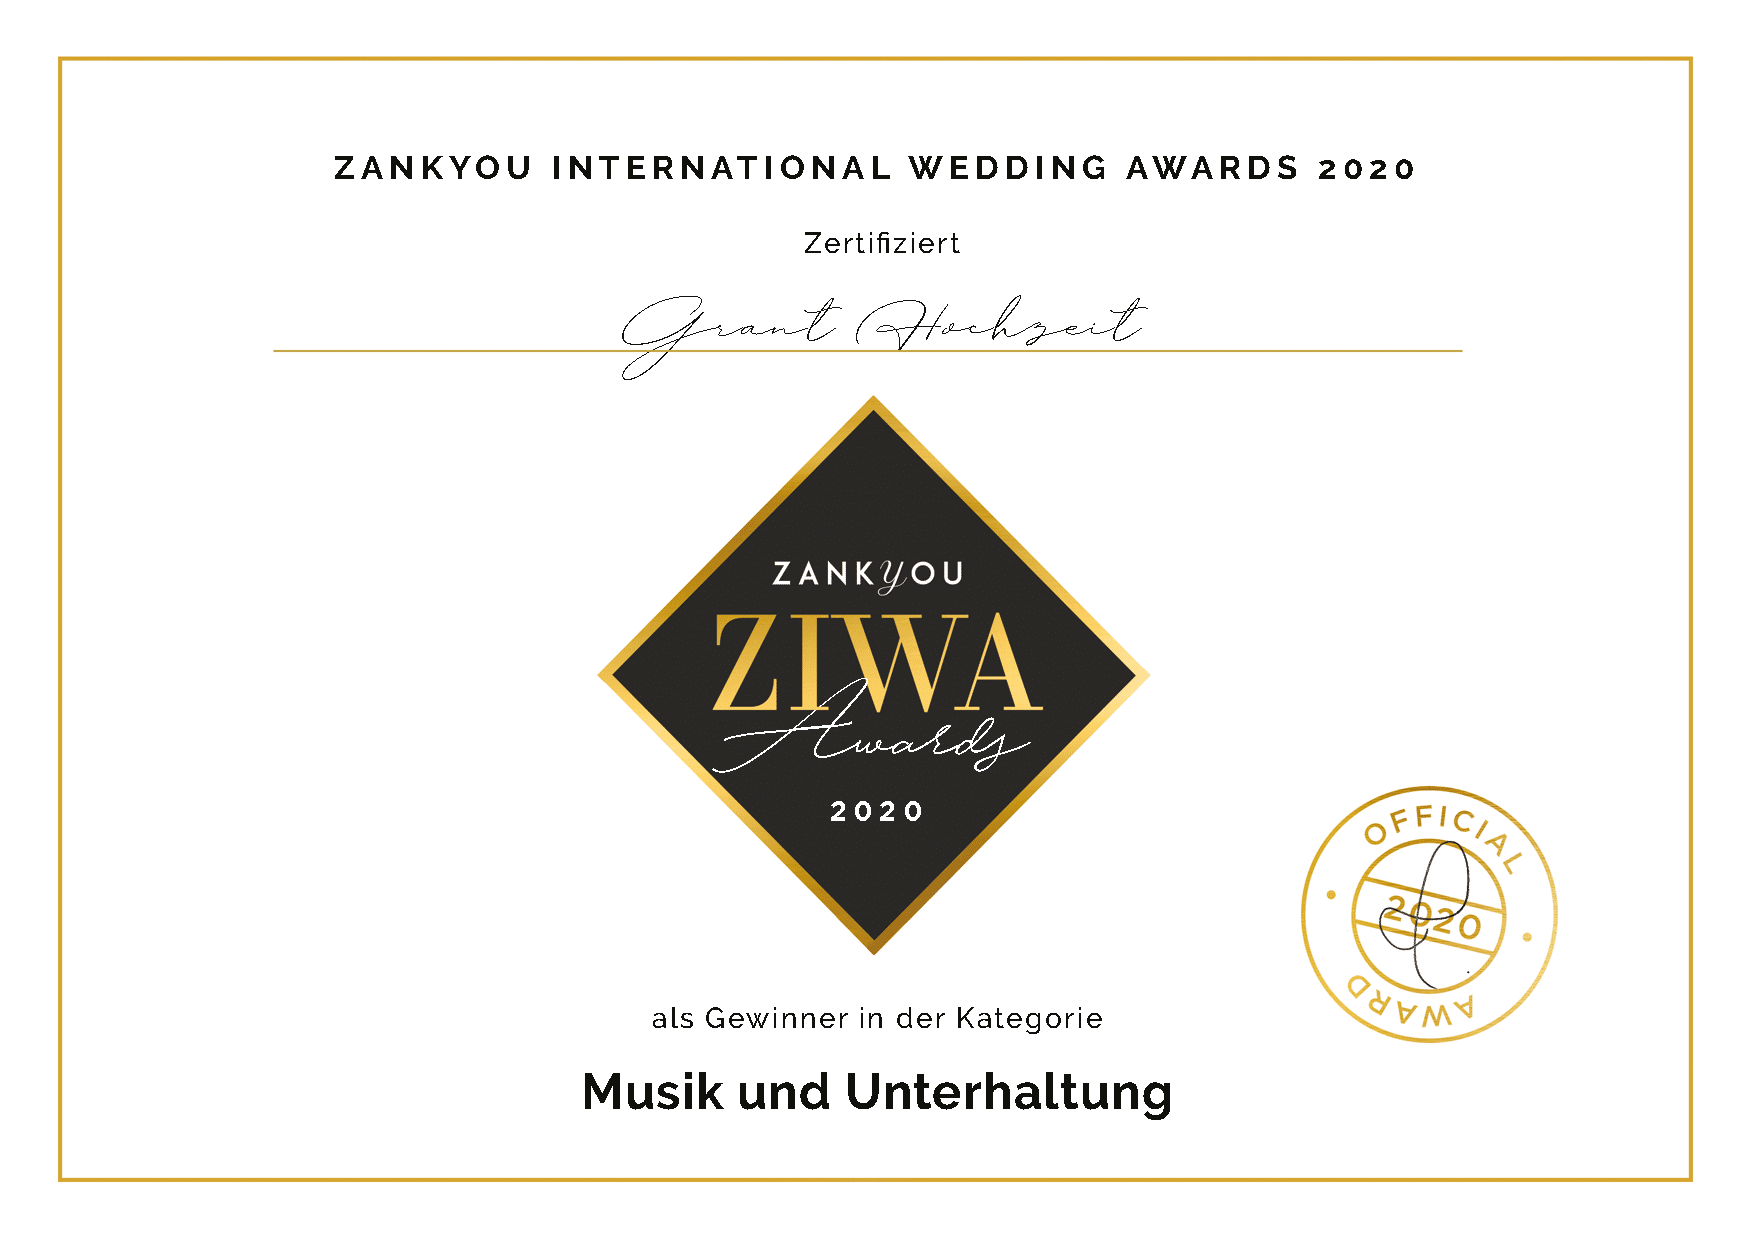 Ziwa Award 2020